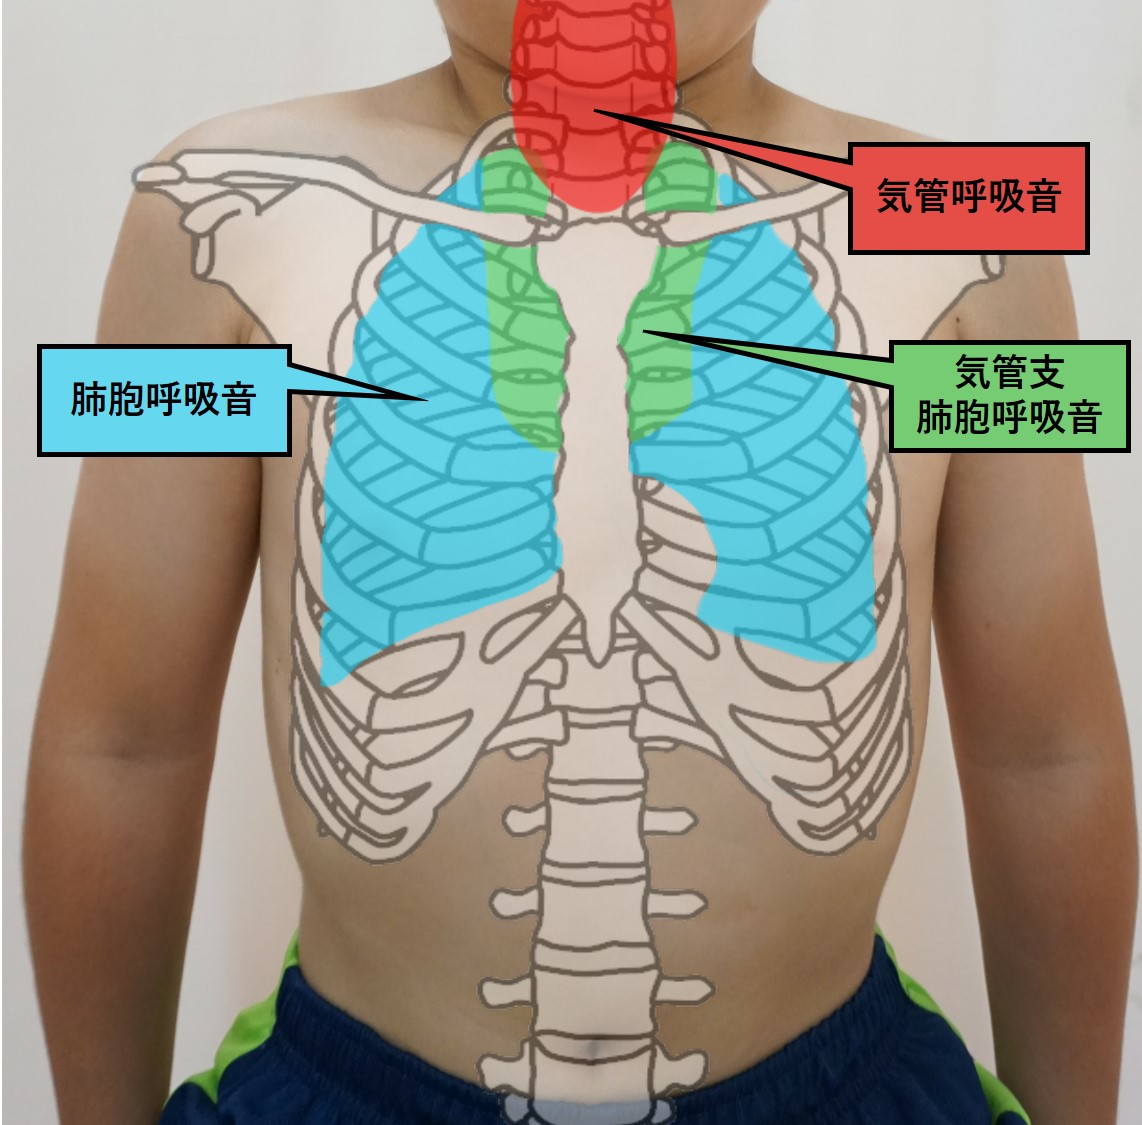 図-胸部呼吸器-聴診-呼吸音聴診部位前胸部.jpg